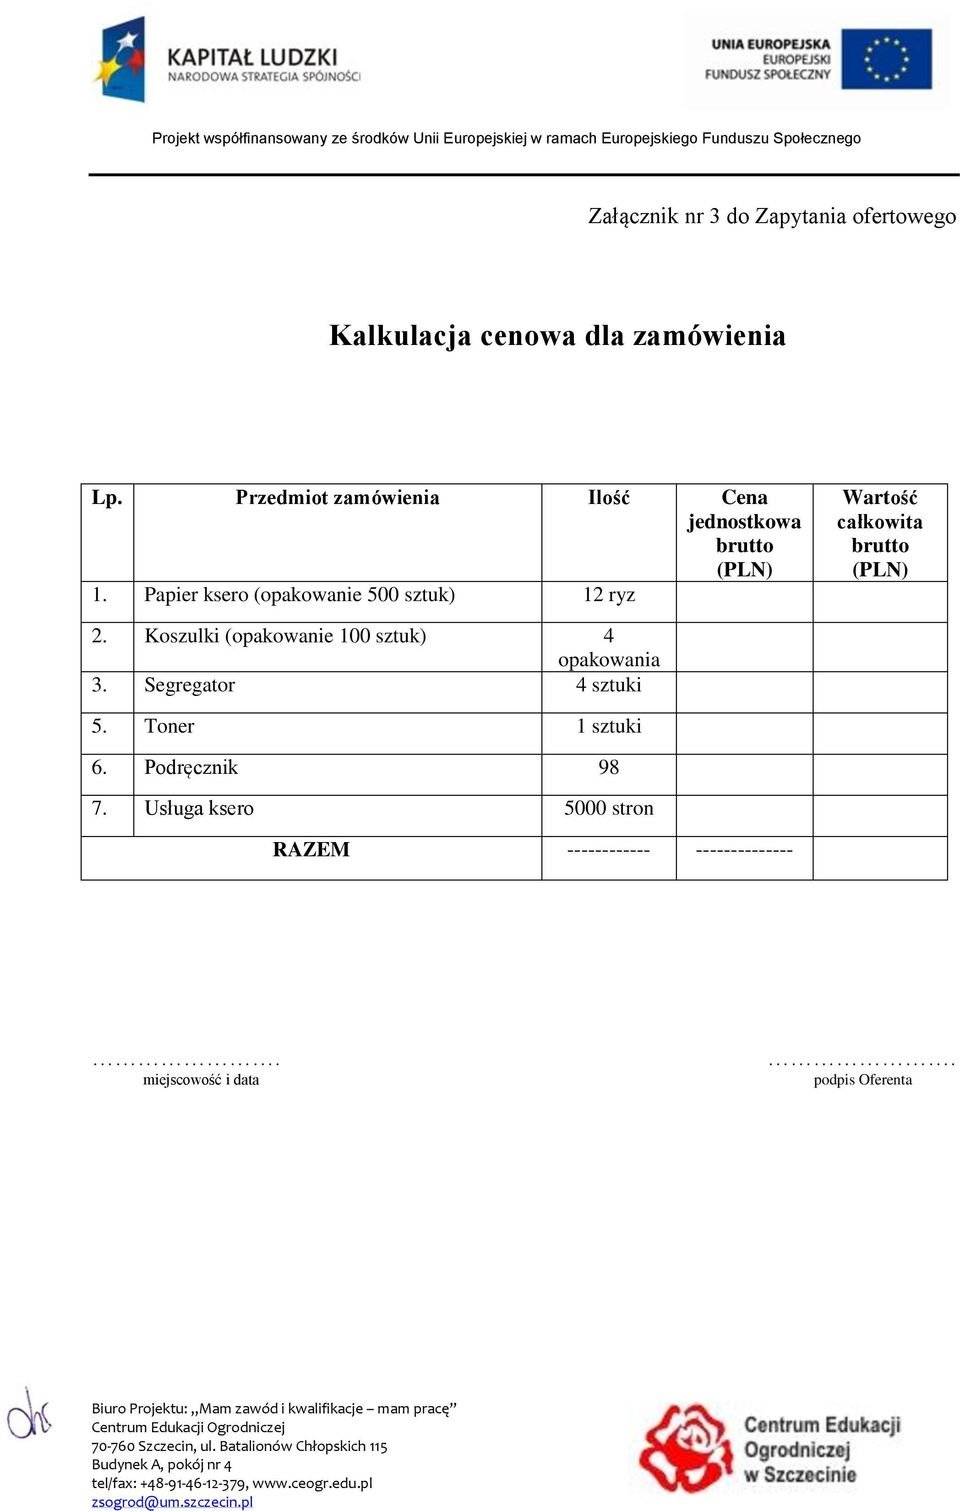 Papier ksero (opakowanie 500 sztuk) 12 ryz Wartość całkowita brutto (PLN) 2.